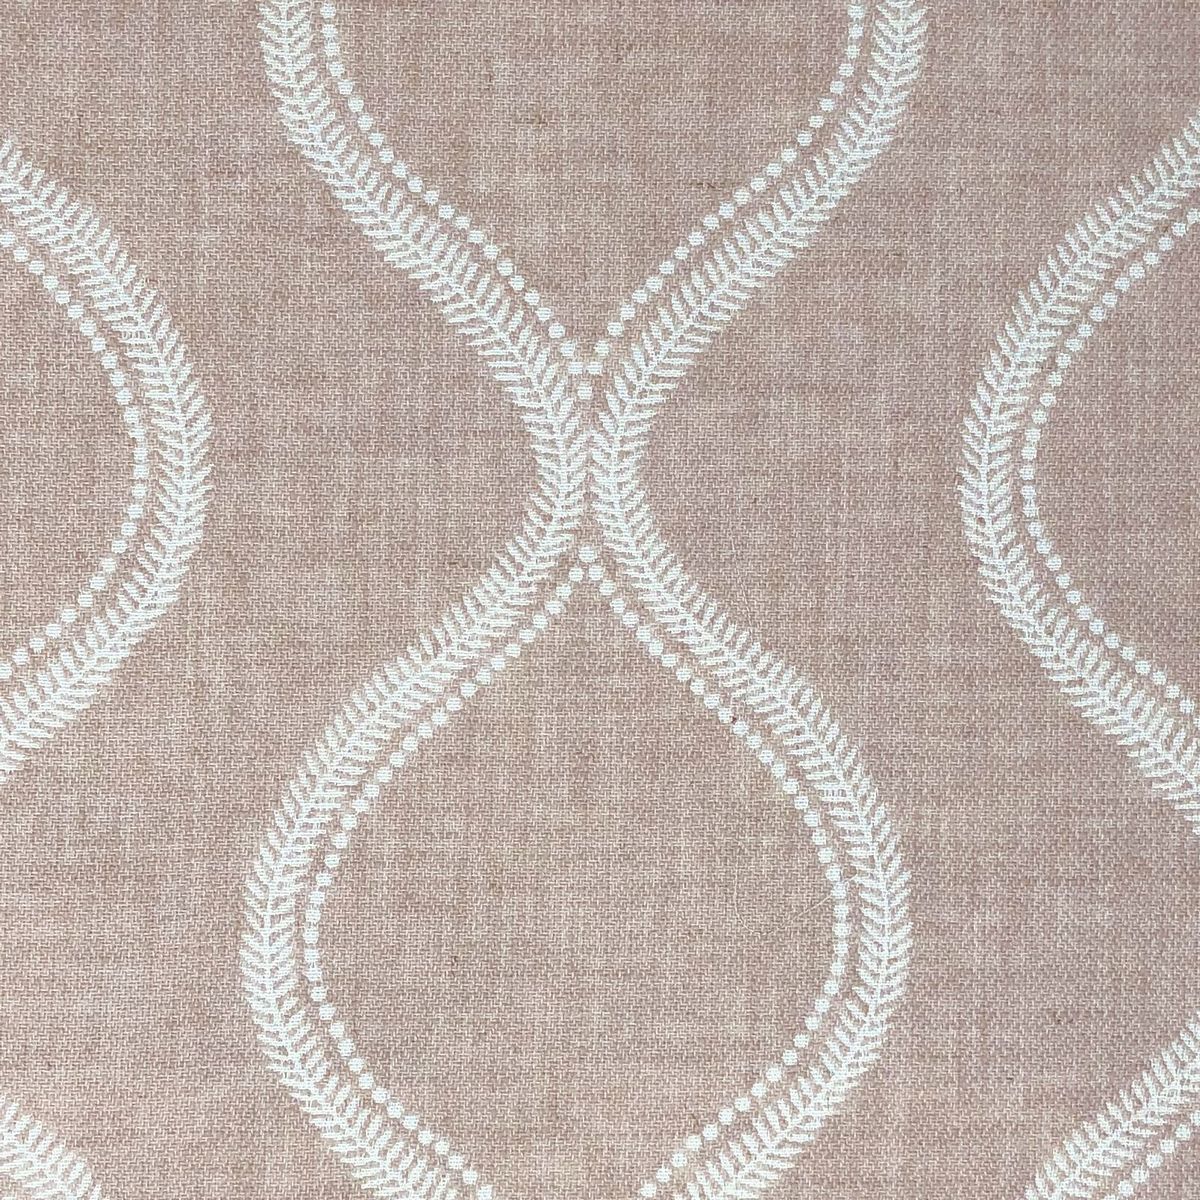 Ledbury Blush Fabric by Chatham Glyn